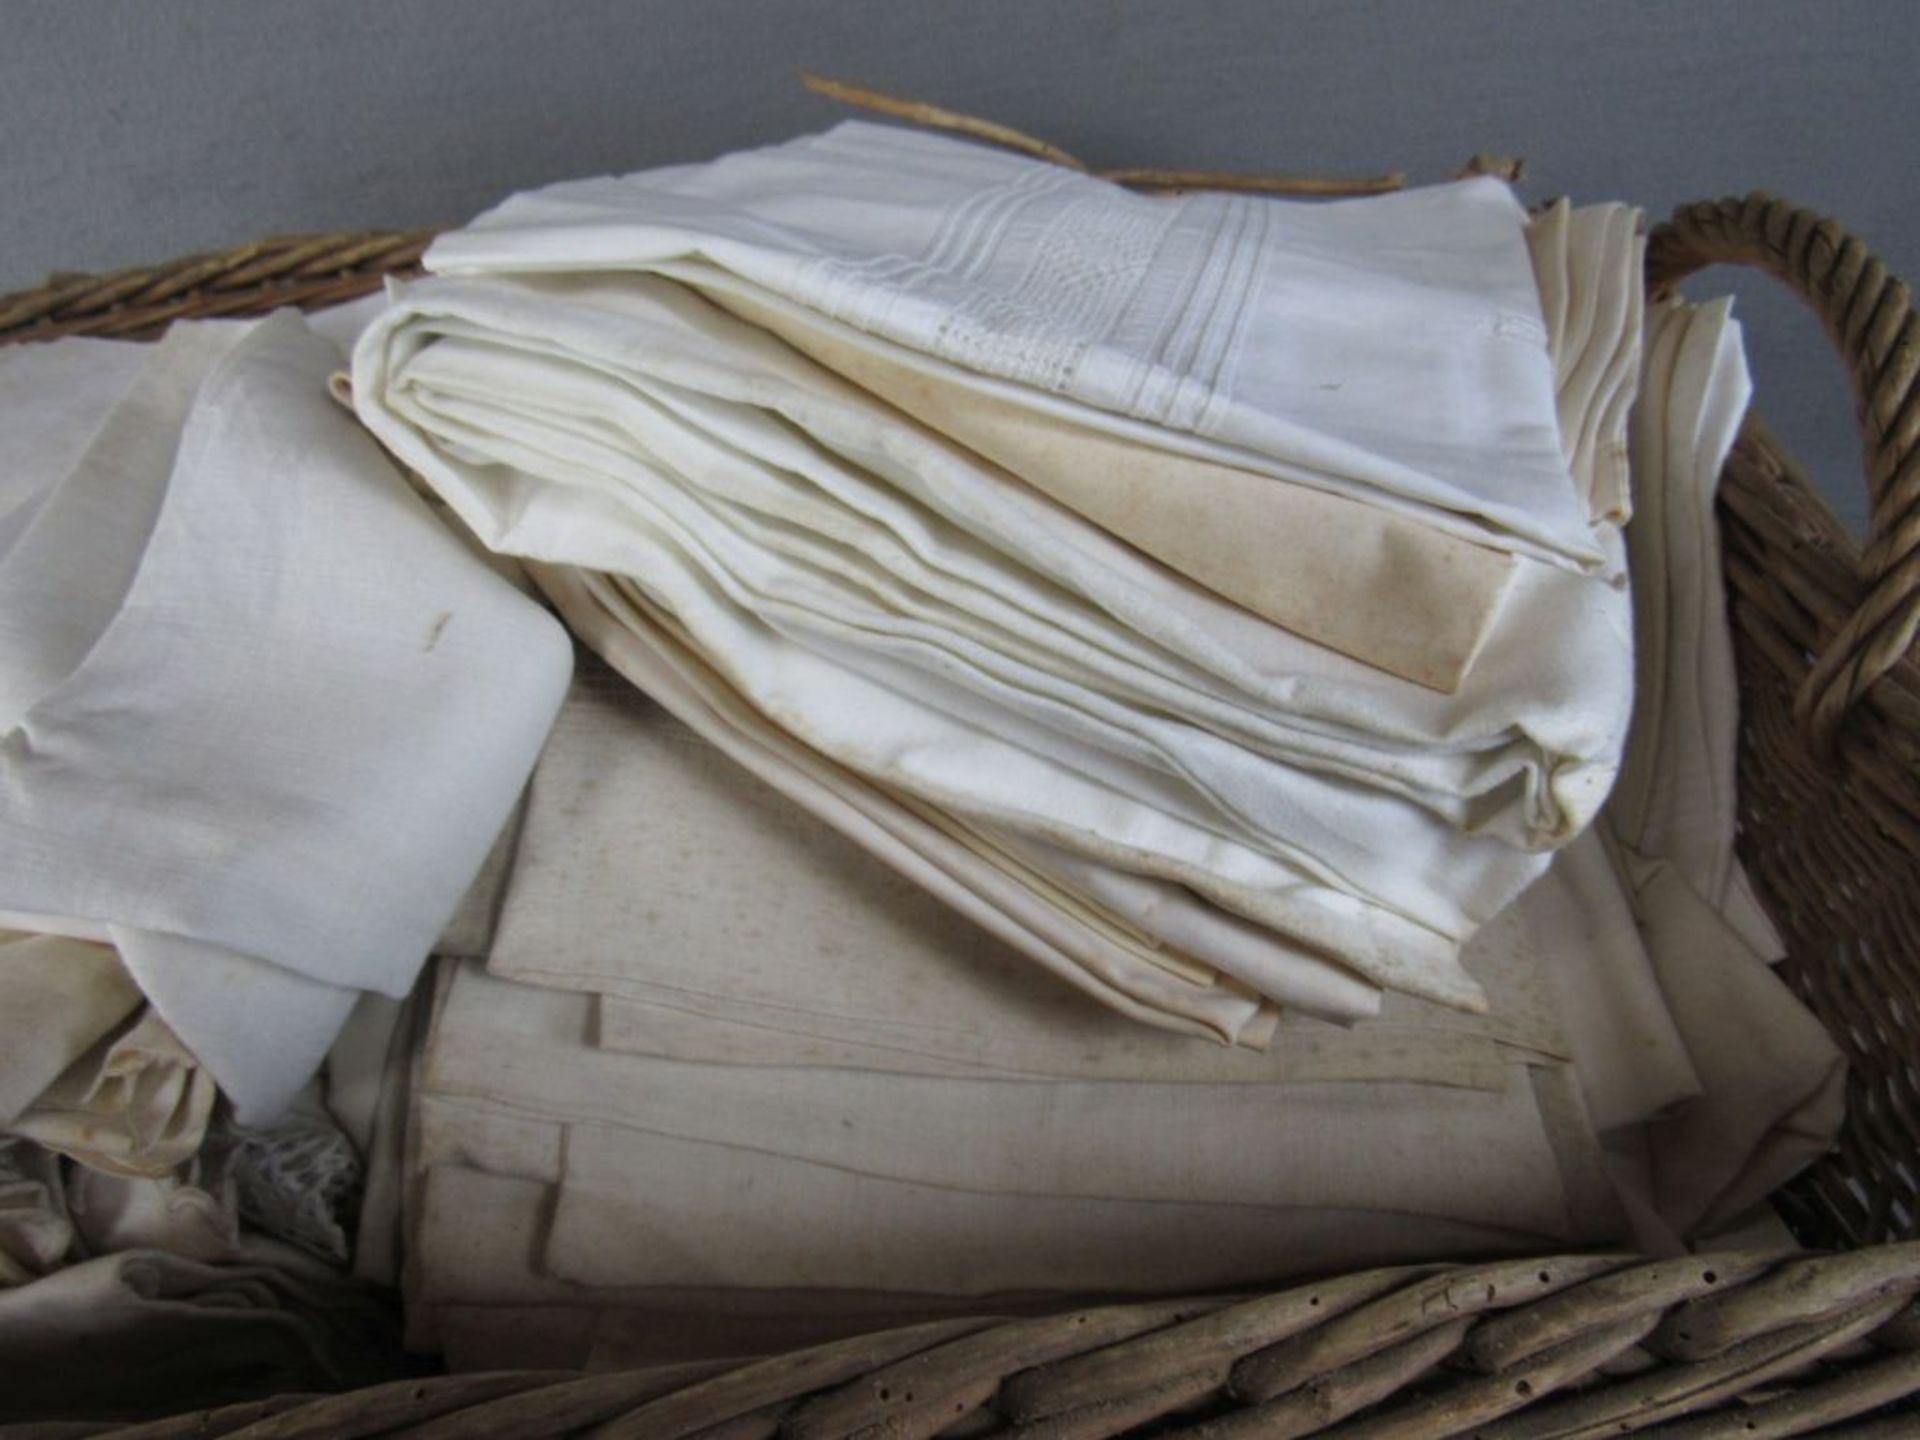 Großer Weidenkorb prall gefüllt mit antikem Leinen überwiegend wohl Bettwäsche direkt vom Dachb - Image 3 of 5